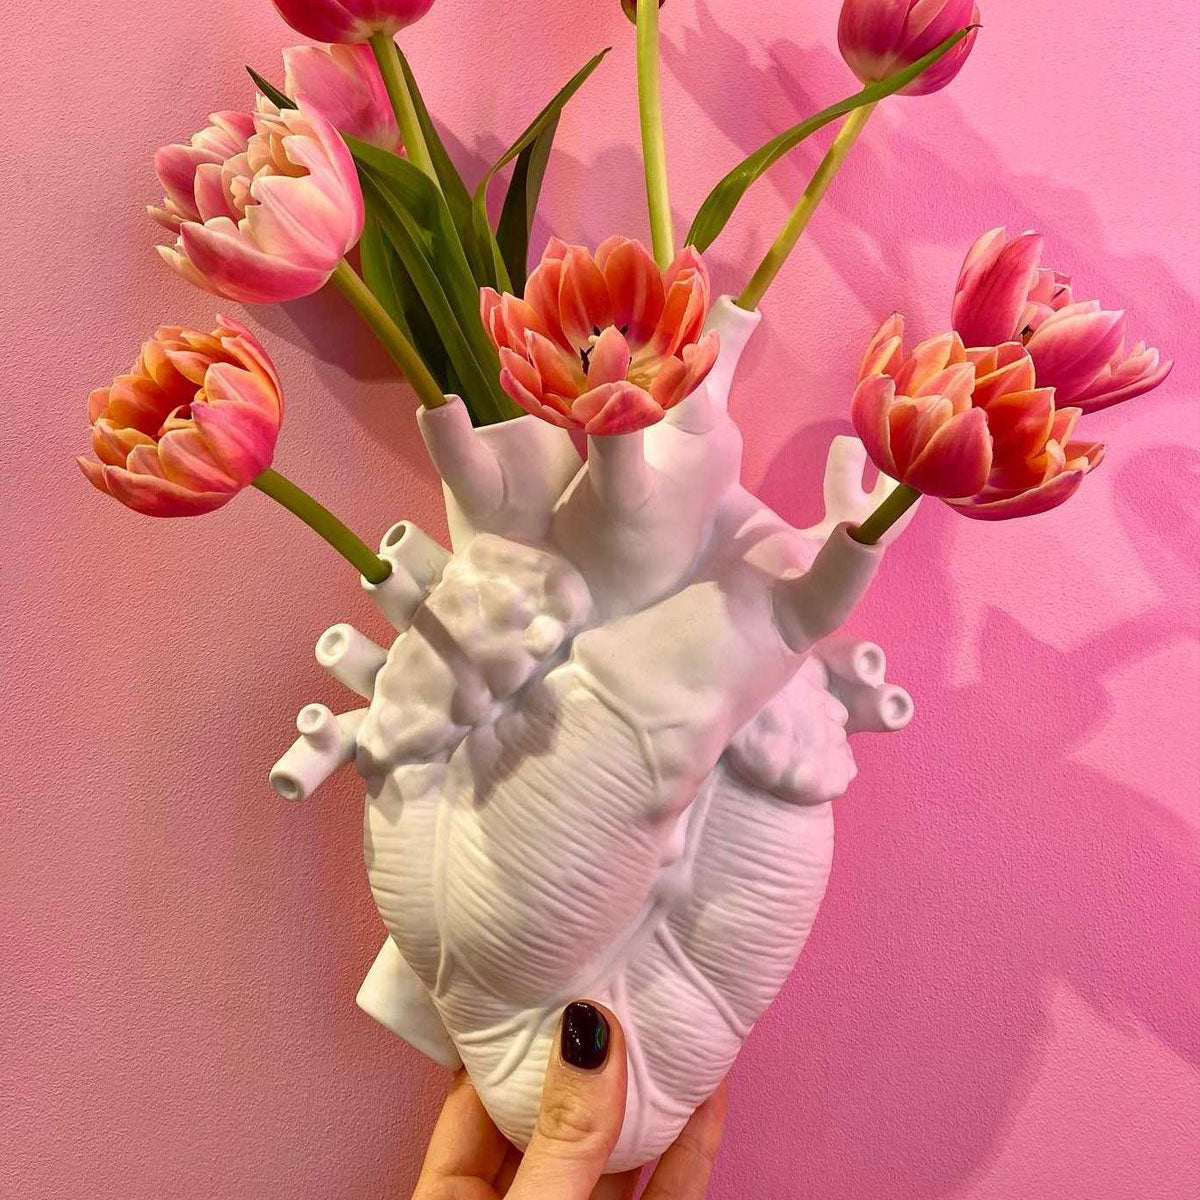 Seletti Love in Bloom Heart Vase, White